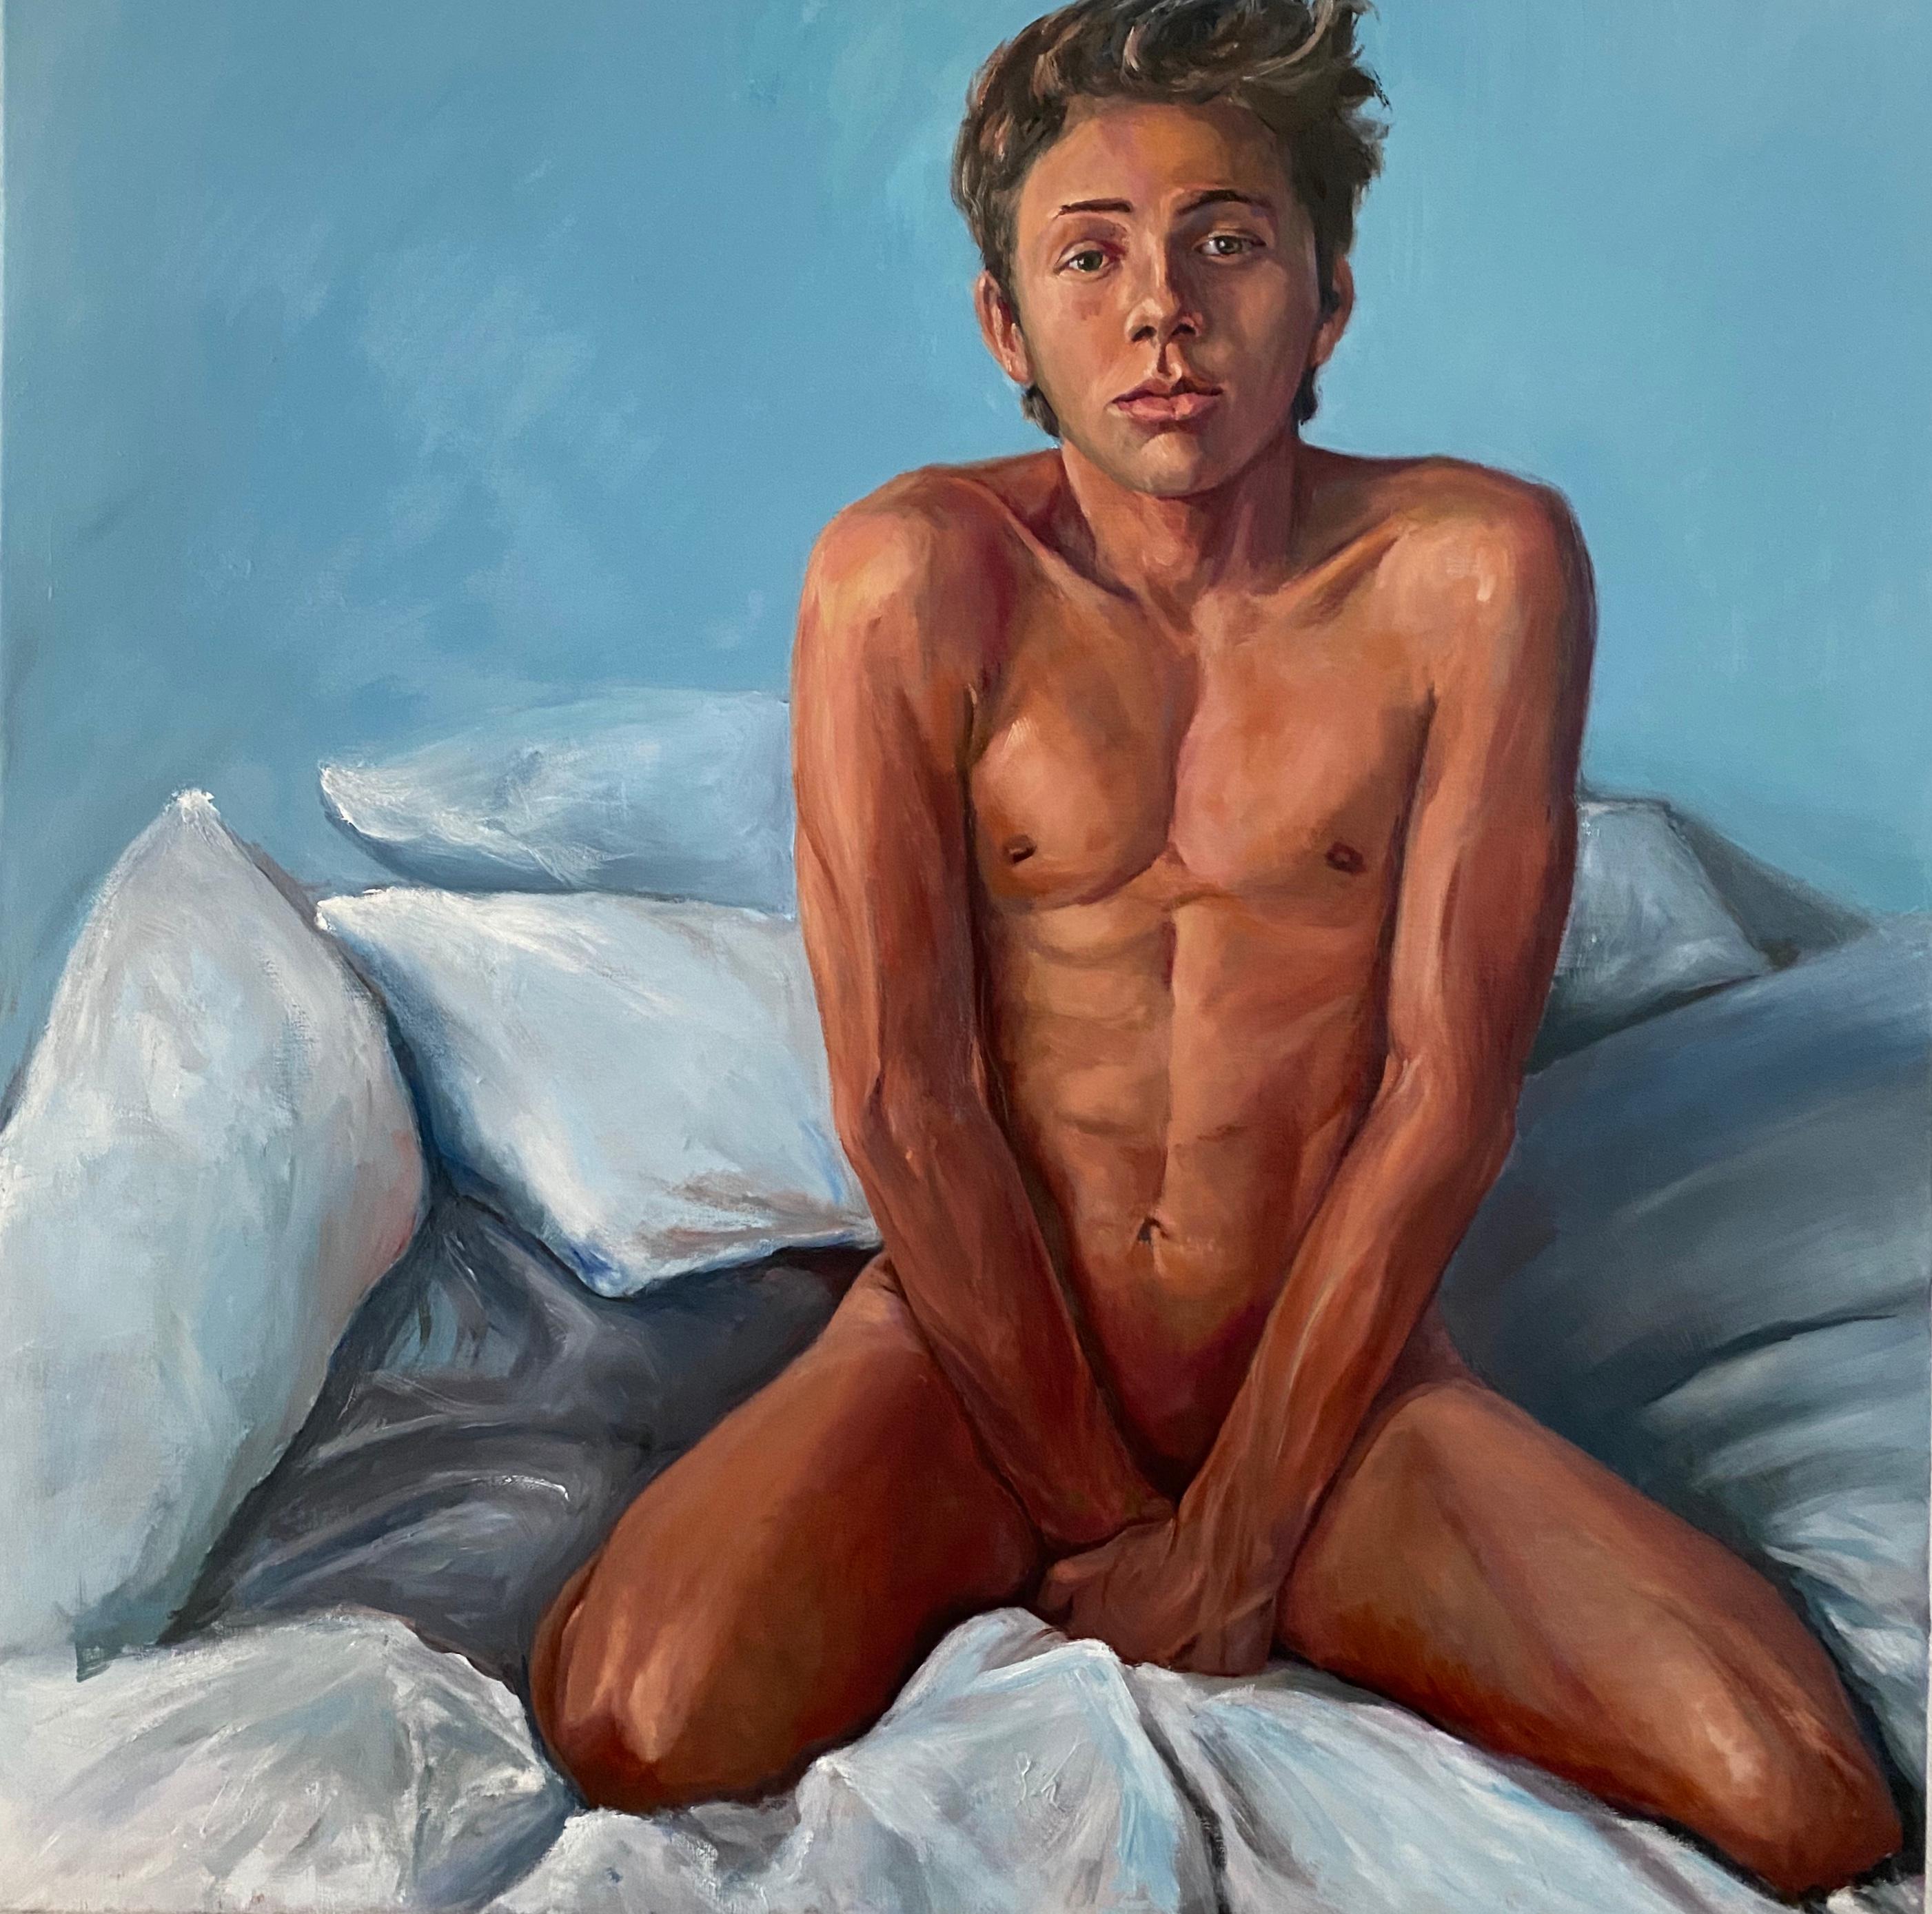 David van der Linden Nude Painting - Bedroom-21st Century Figurative painting of a nude boy 